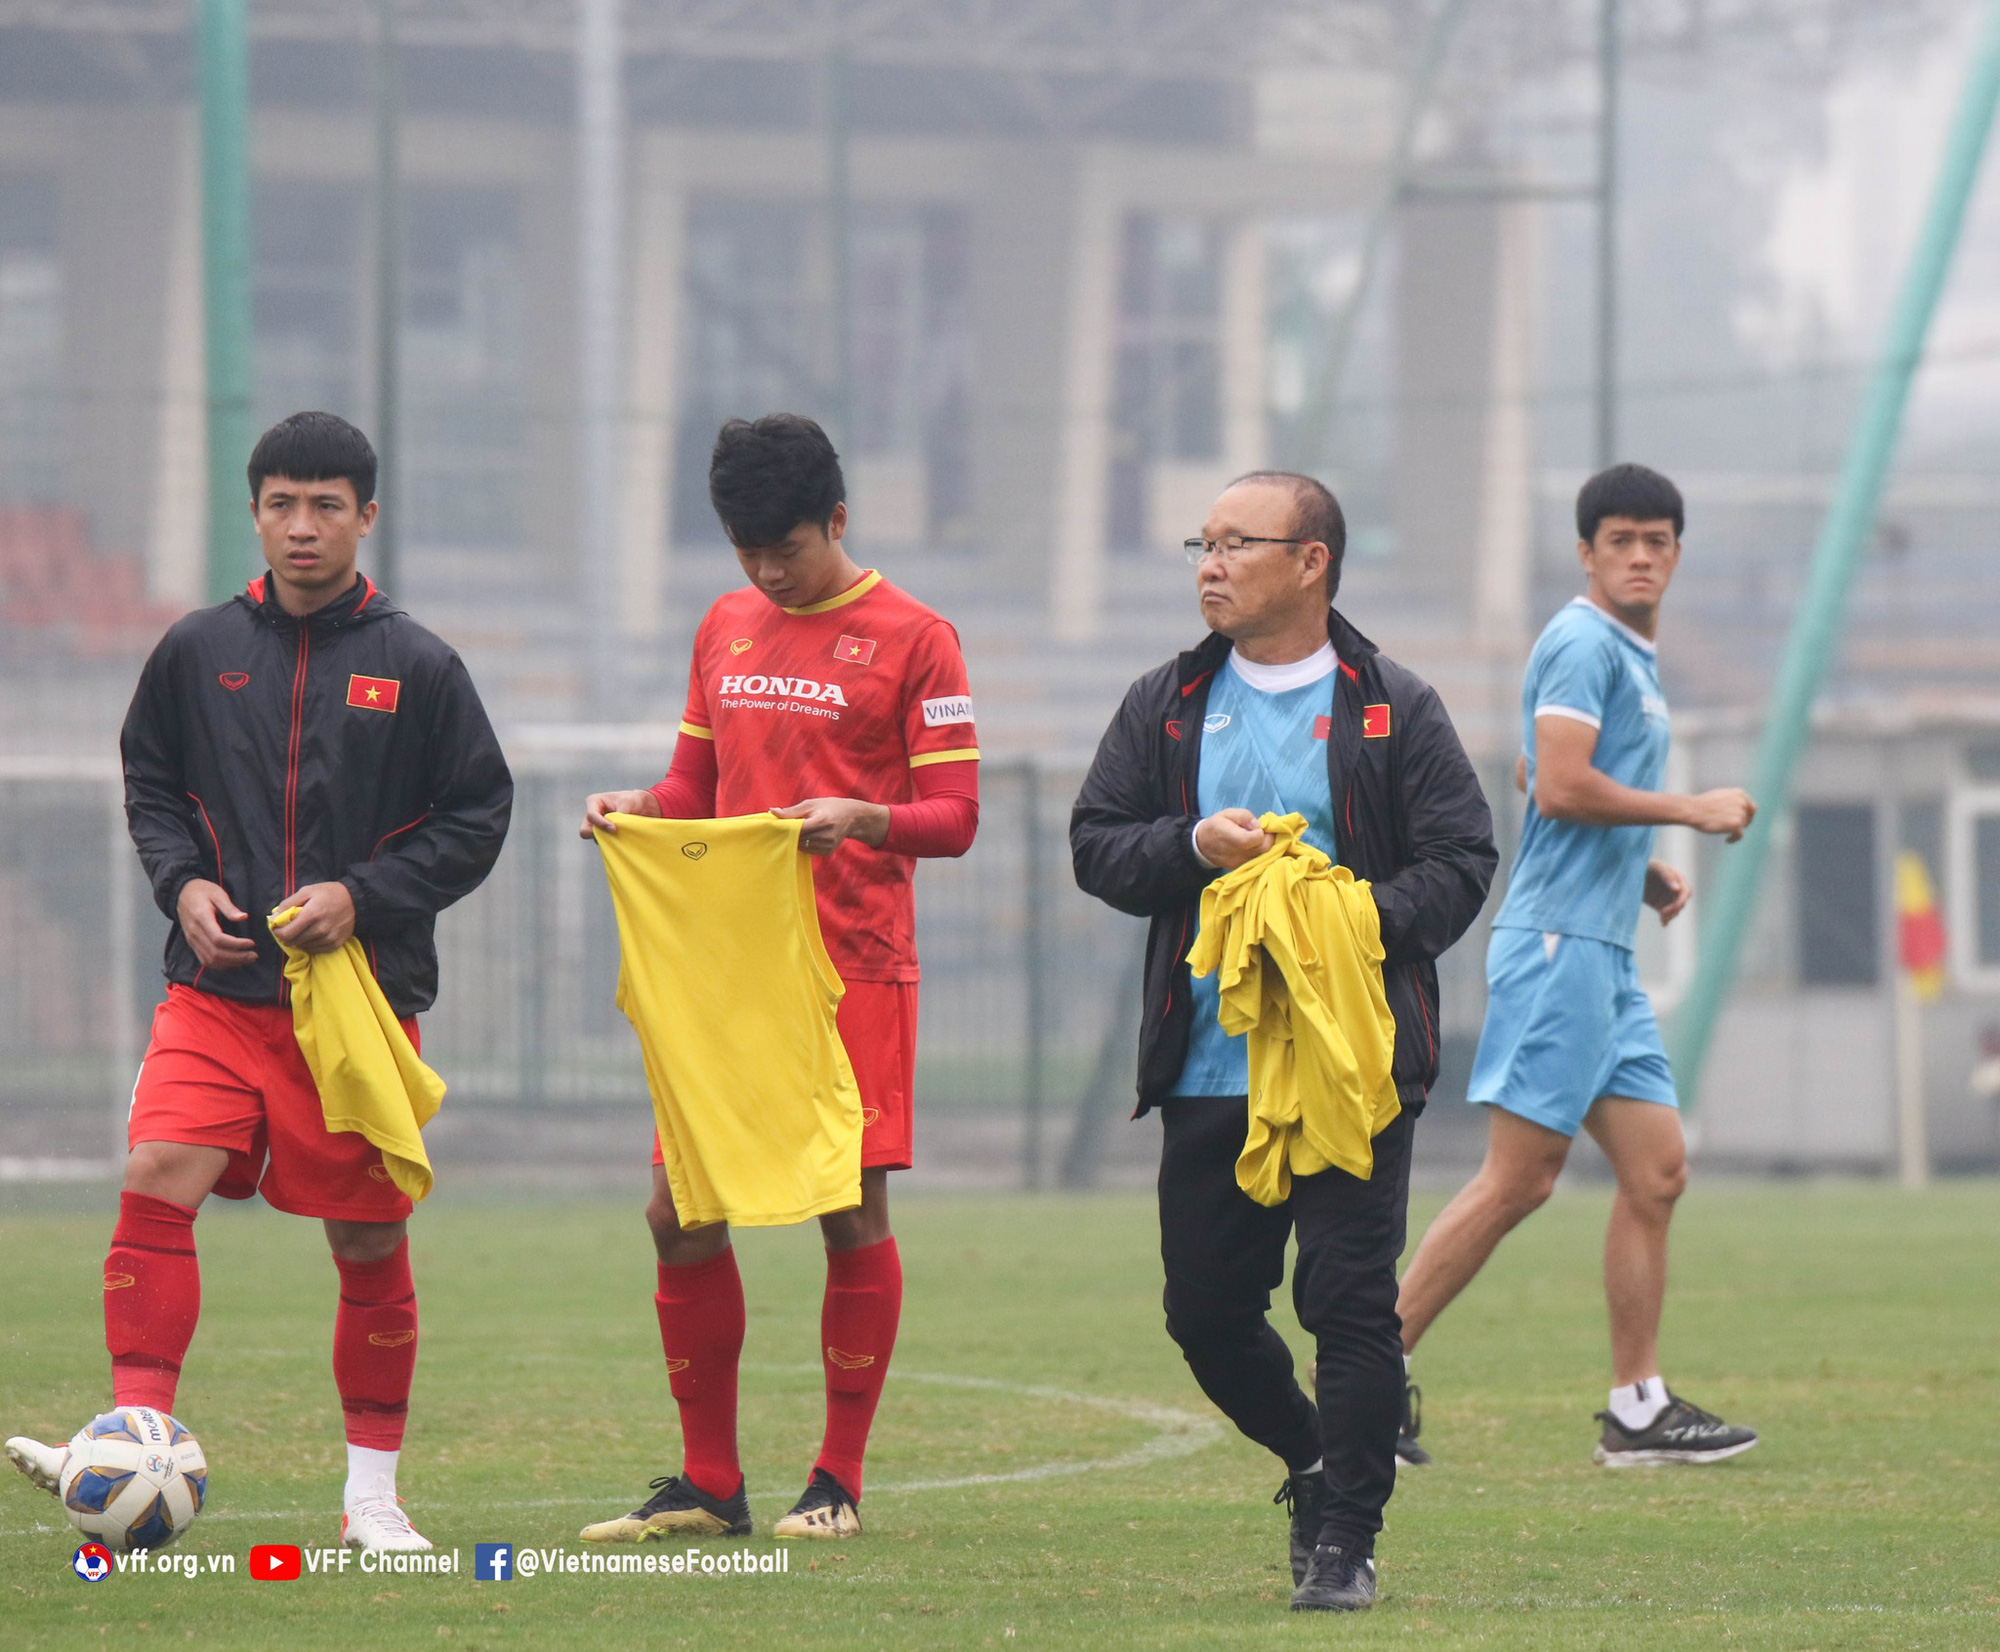 Tuyển Trung Quốc sắp "thay máu" hàng loạt, chiêu mộ cựu cầu thủ Man City vào ban huấn luyện để chuẩn bị làm khách của tuyển Việt Nam - Ảnh 3.